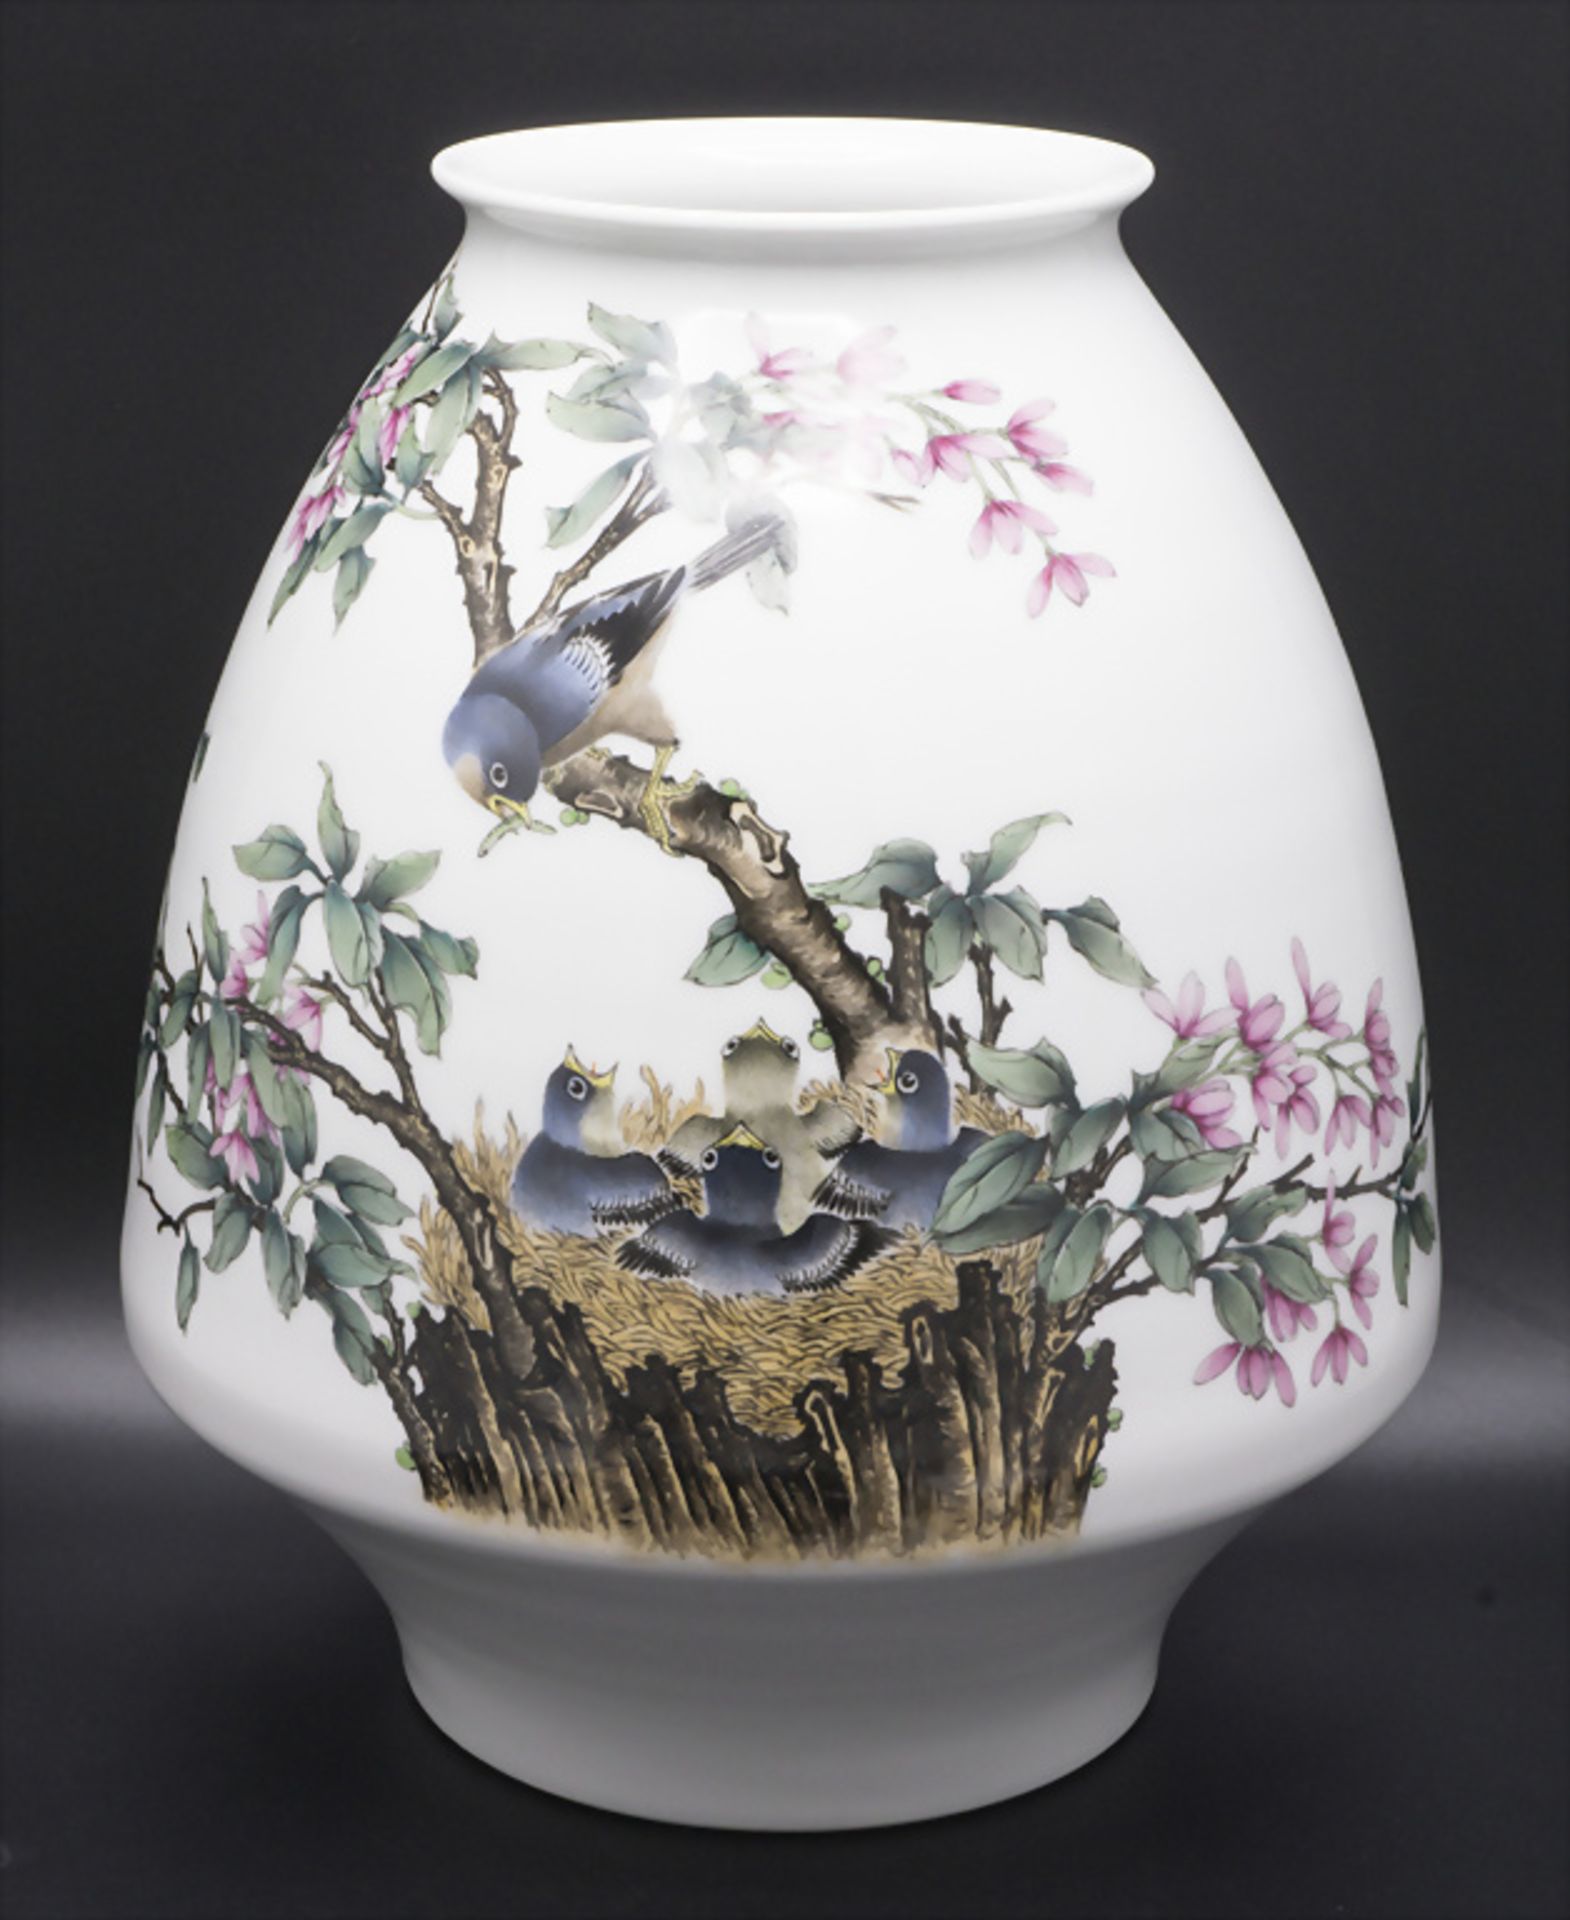 Ziervase / A decorative porcelain vase, China, 1. Hälfte 20. Jh.